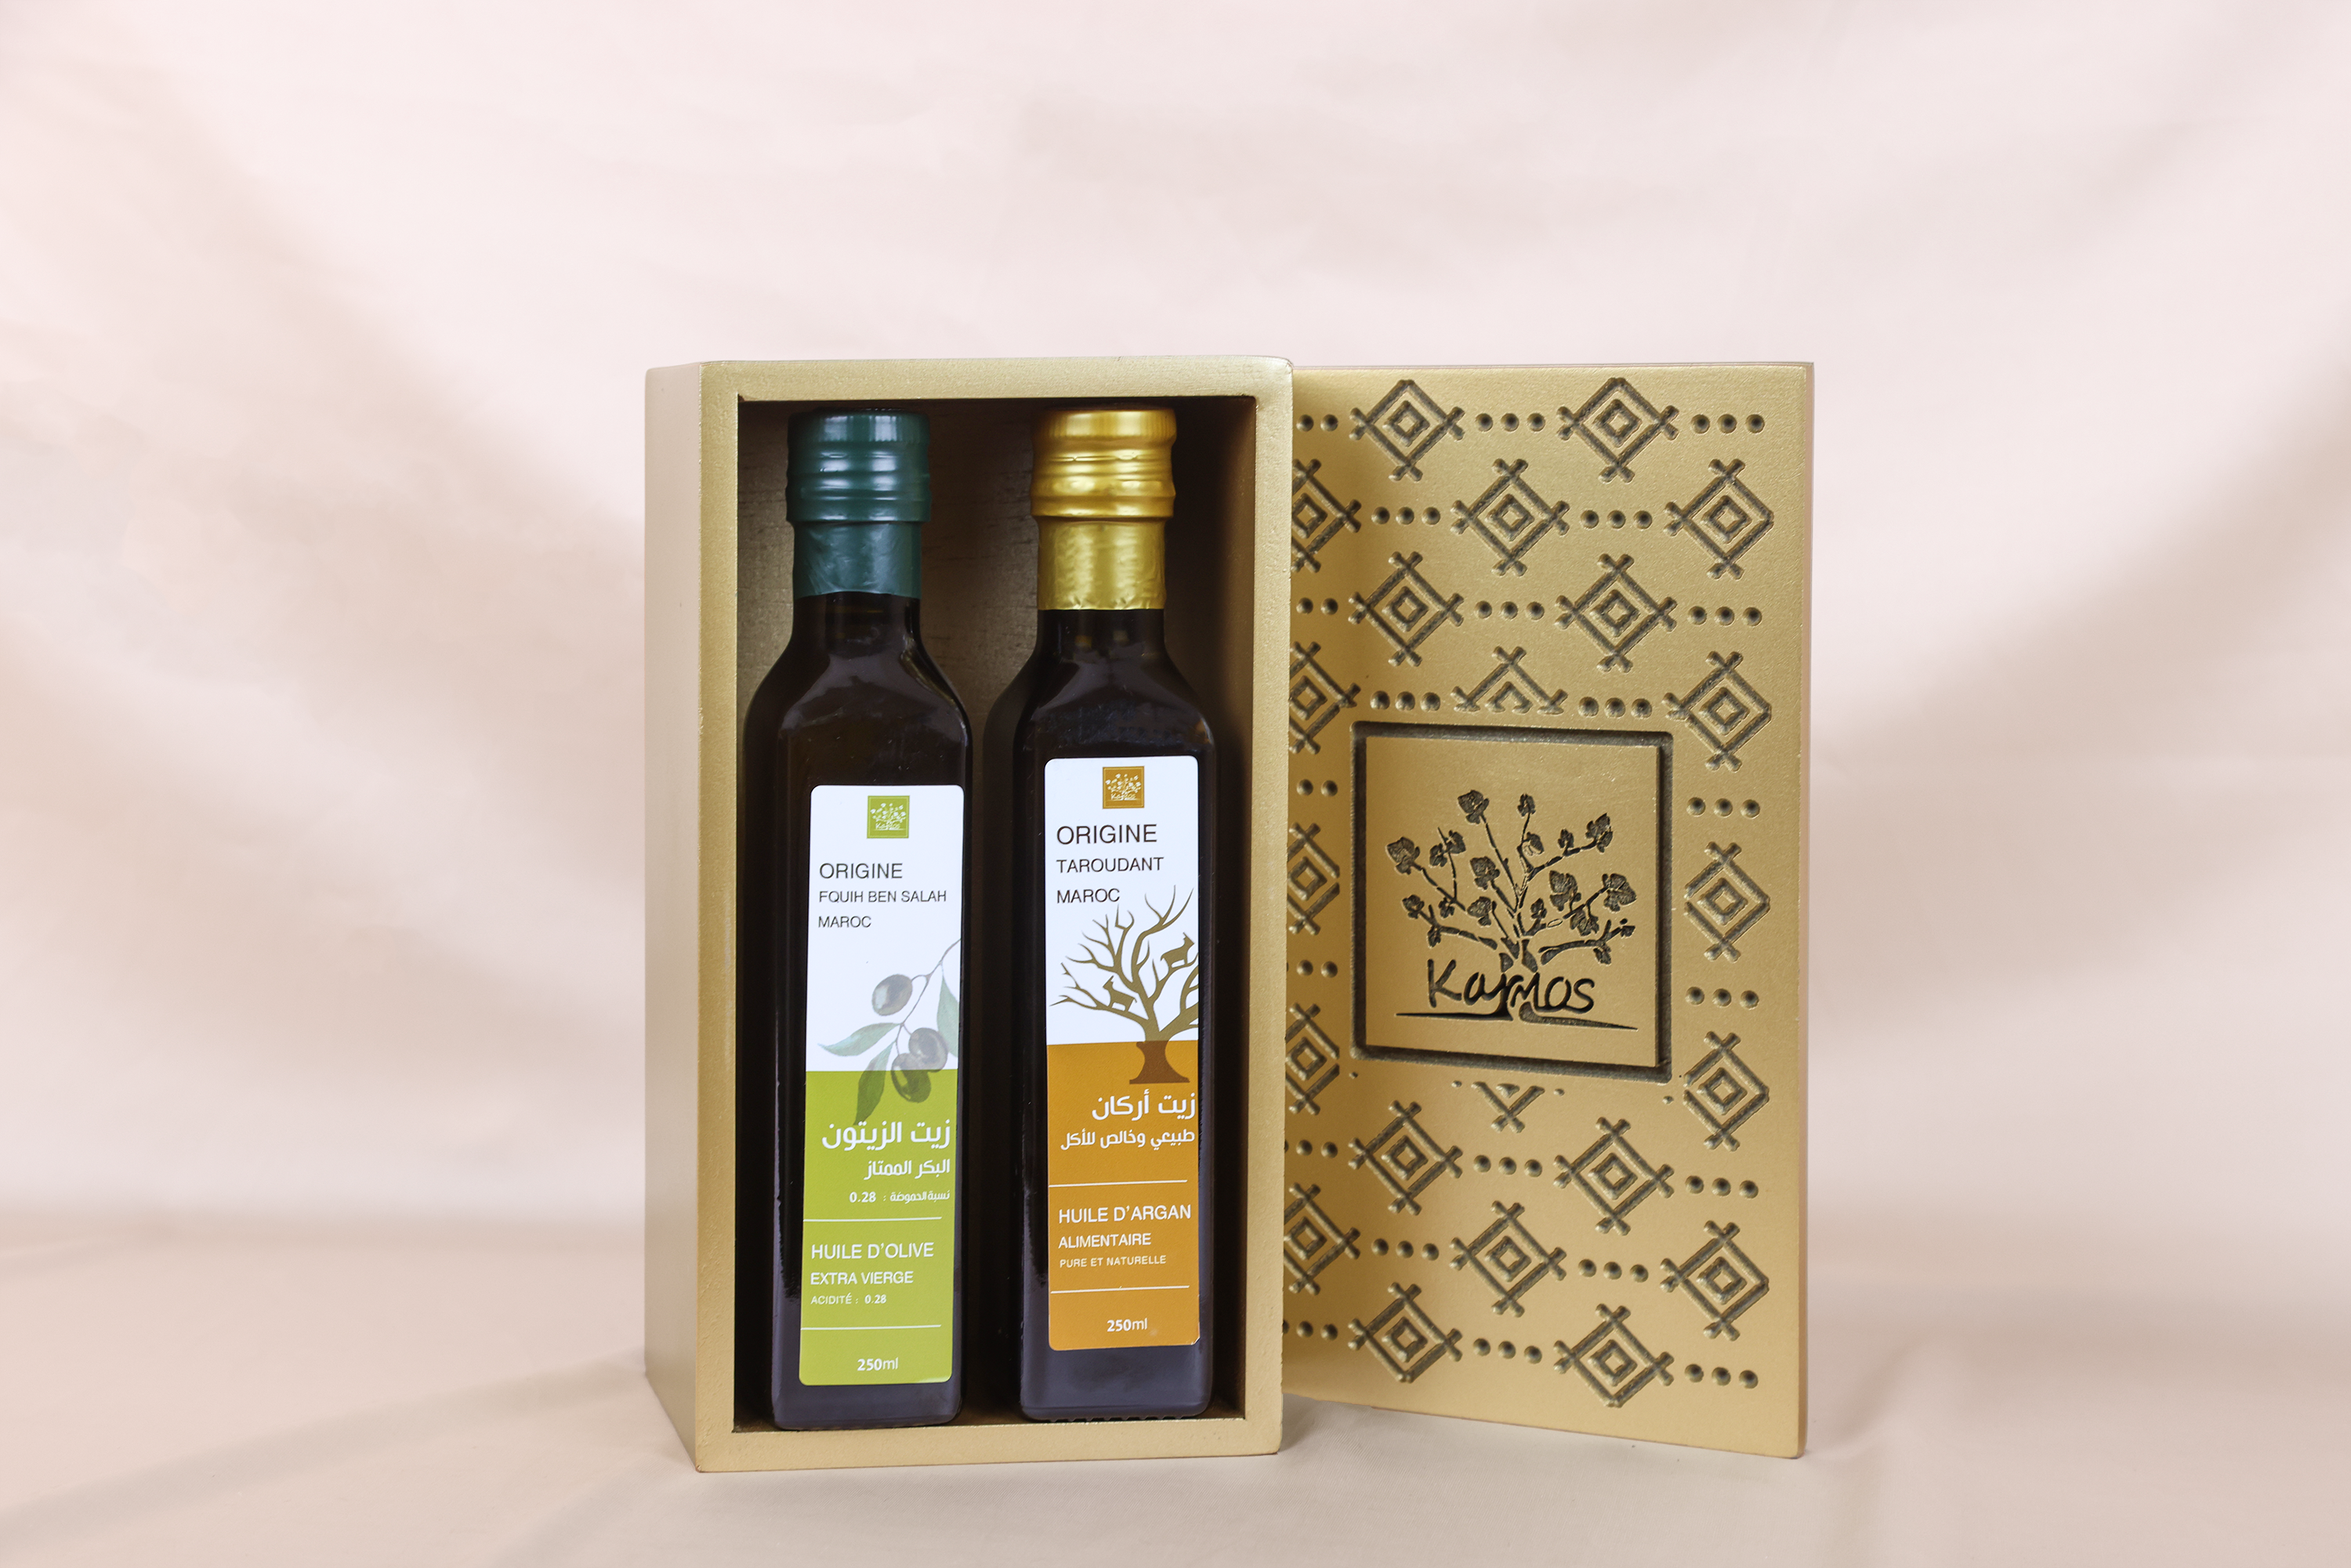 7—Coffret huile-d’argan-huile-d’olive